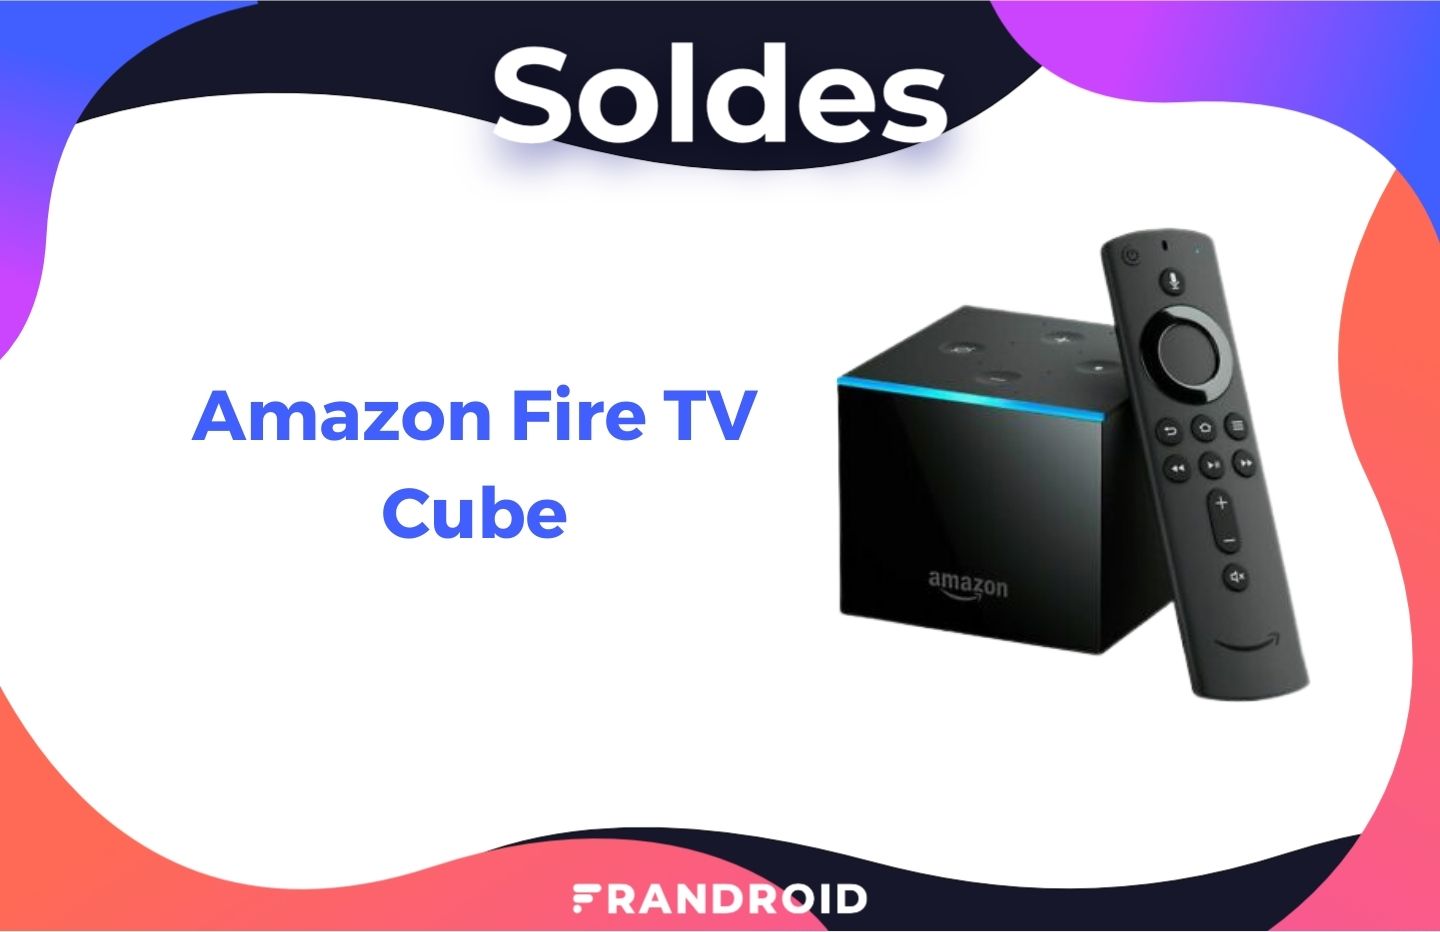 Le prix de l’Amazon Fire TV Cube baisse fortement pour les soldes chez Boulanger